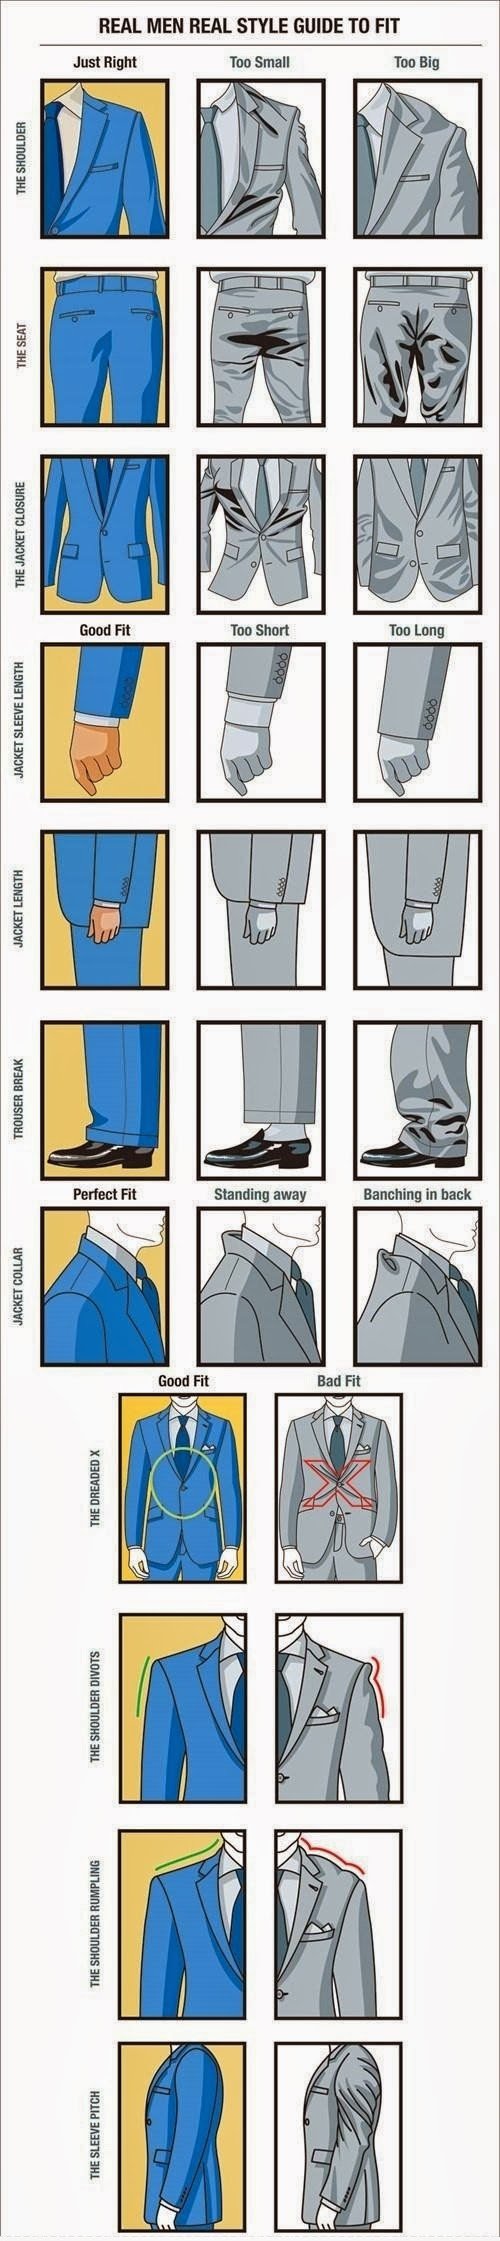 როგორ უნდა ერგებოდეს ტანსაცმელი მამაკაცს